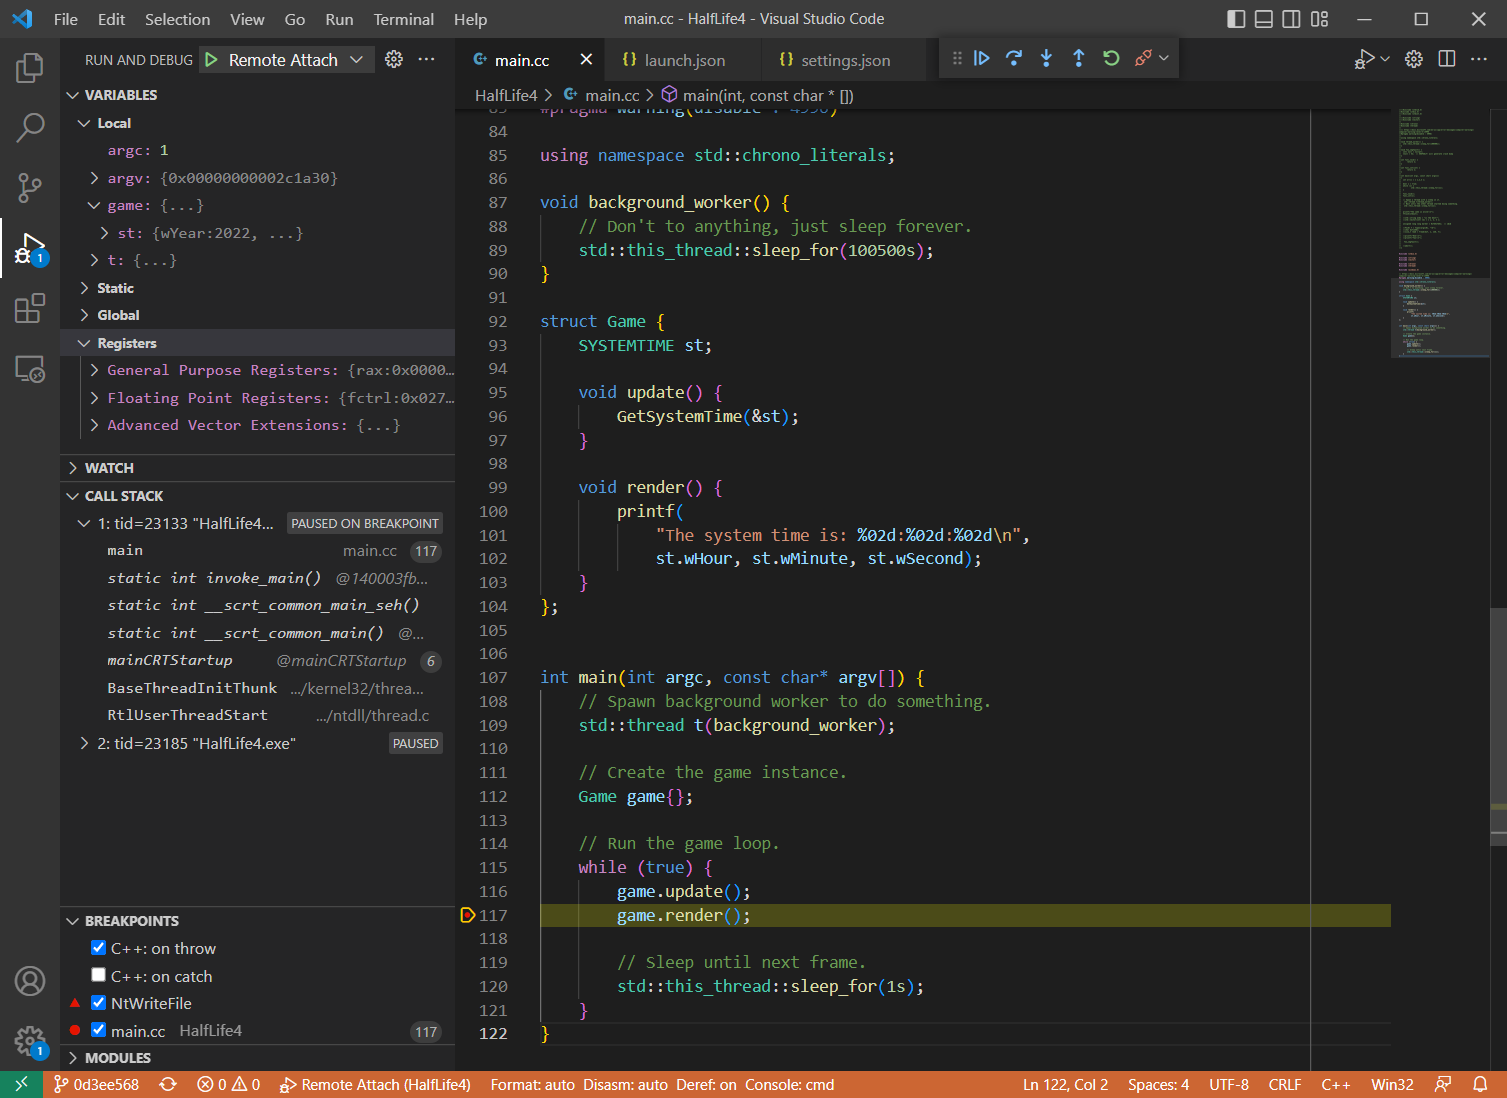 Visual Studio Code debugging teaser